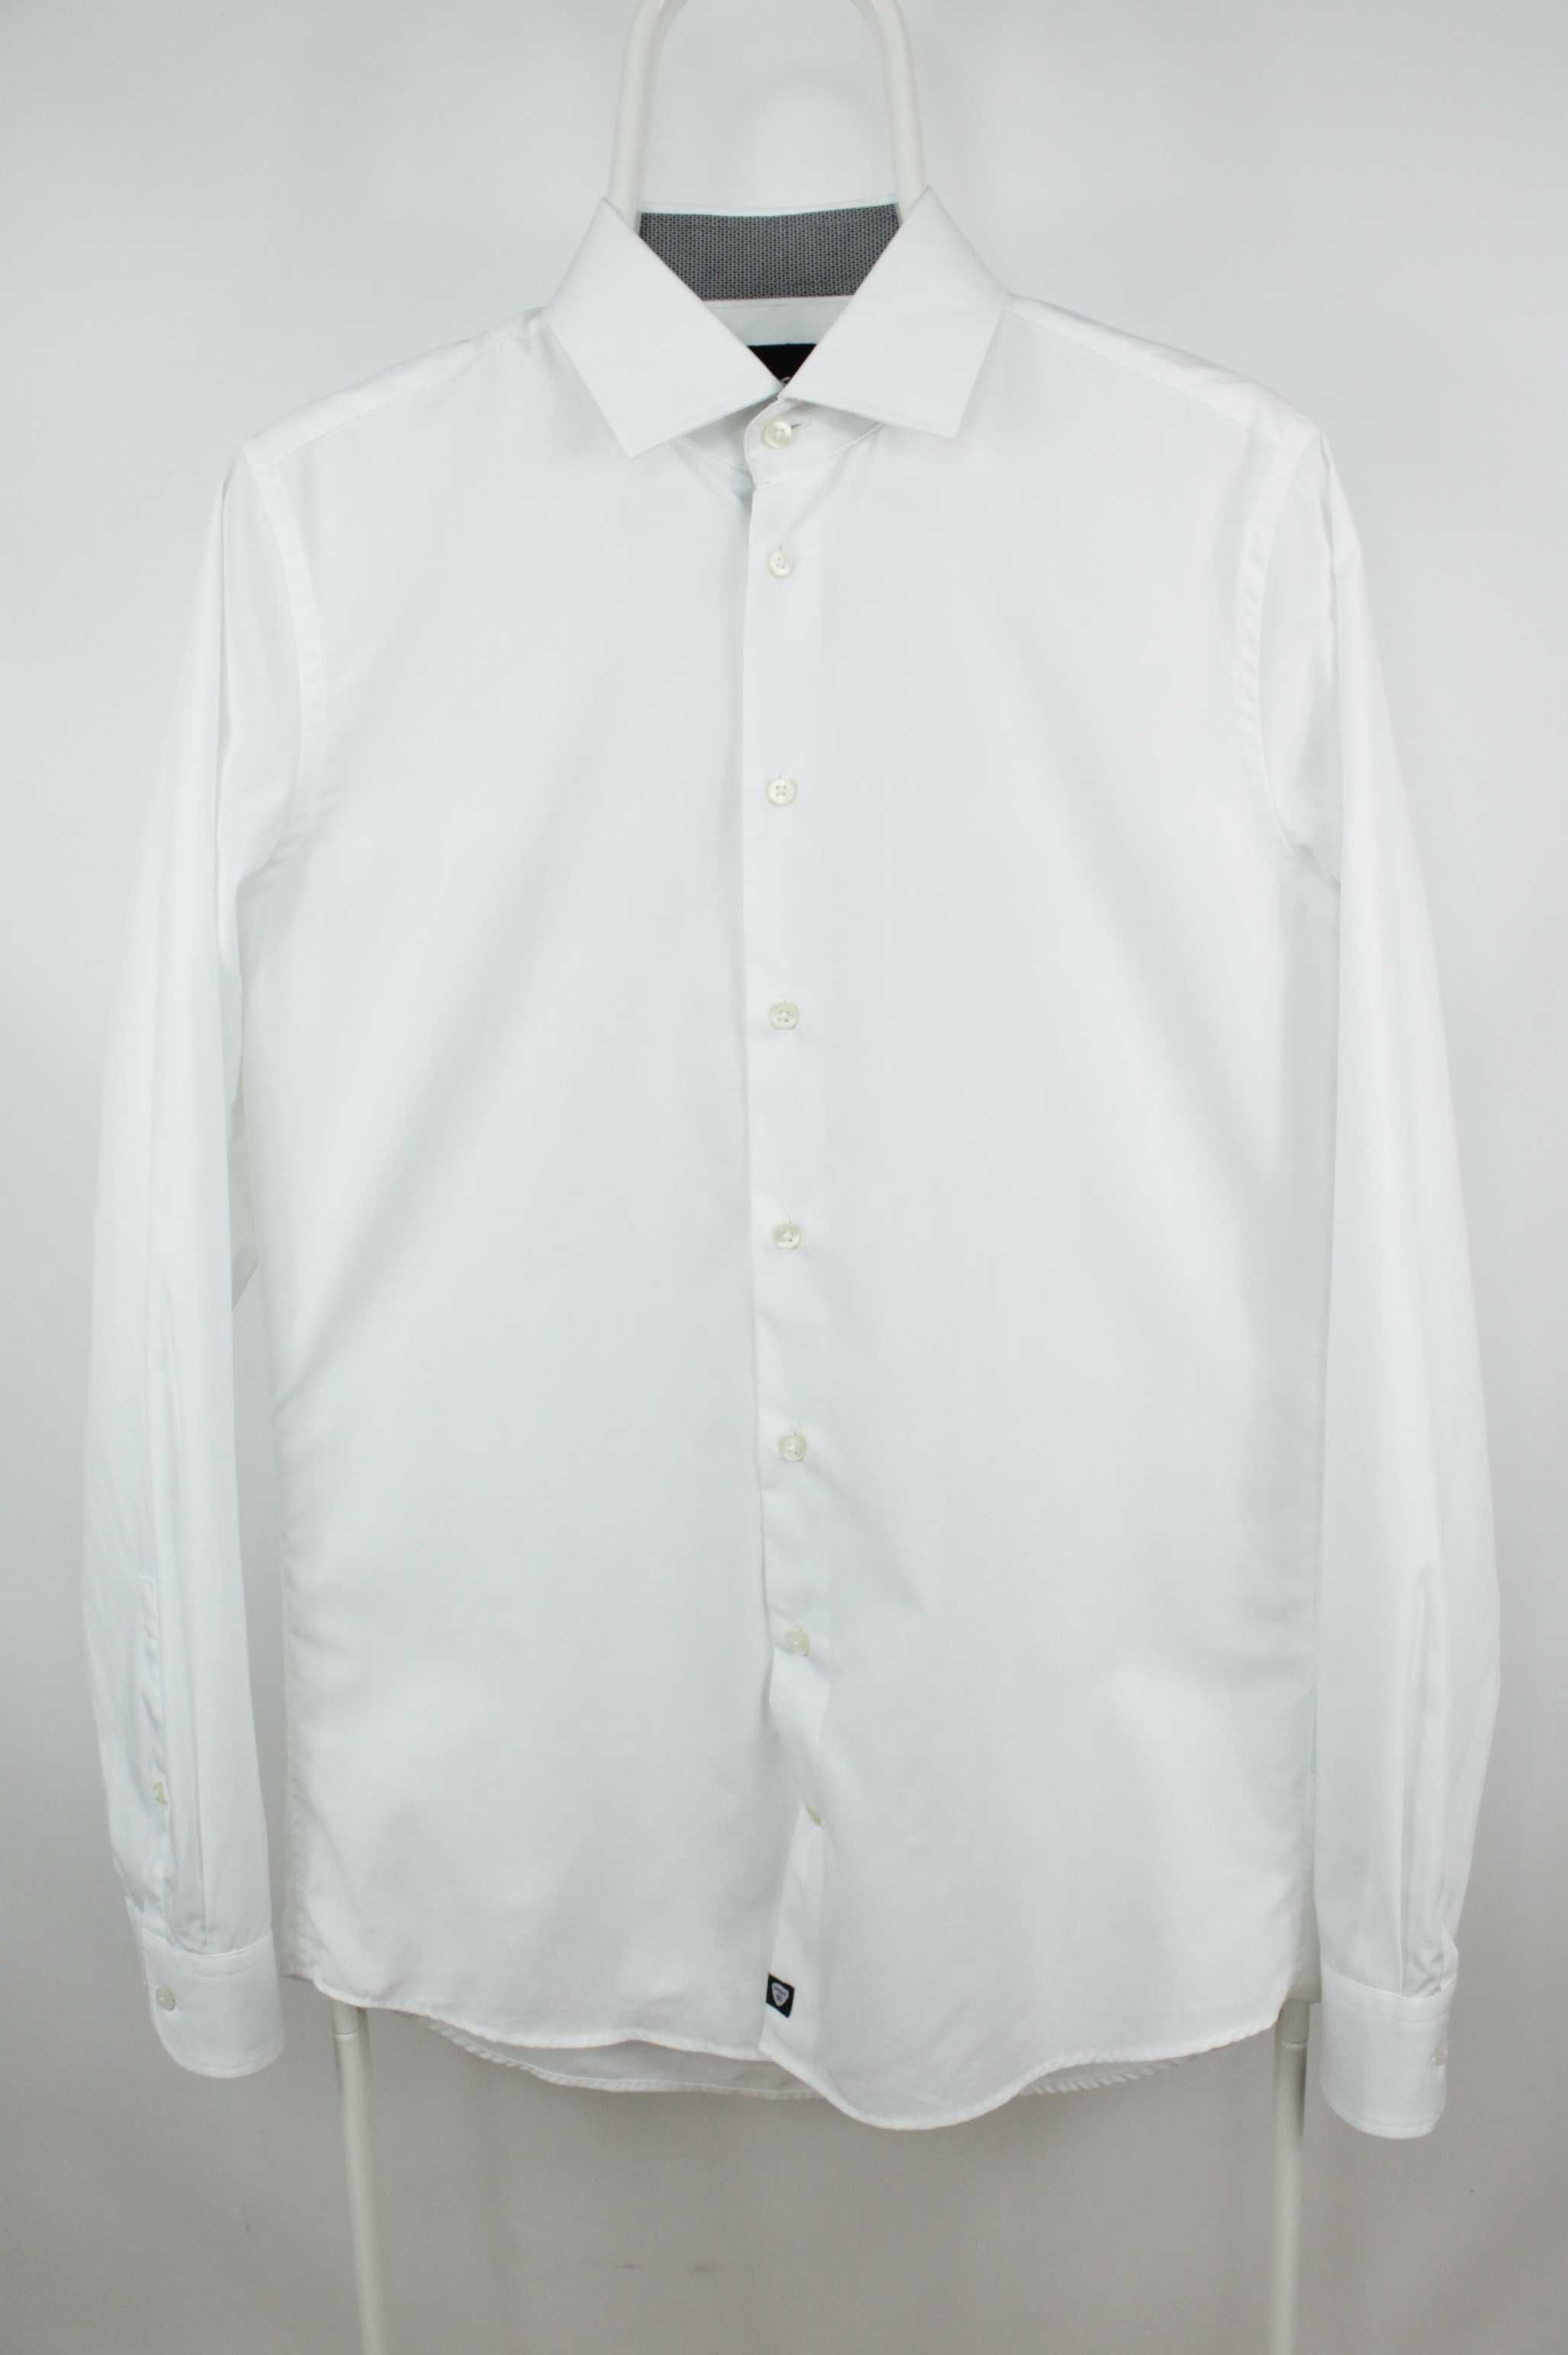 Білосніжна класична сорочка рубашка Strellson Slim Fit Розмір 38 M